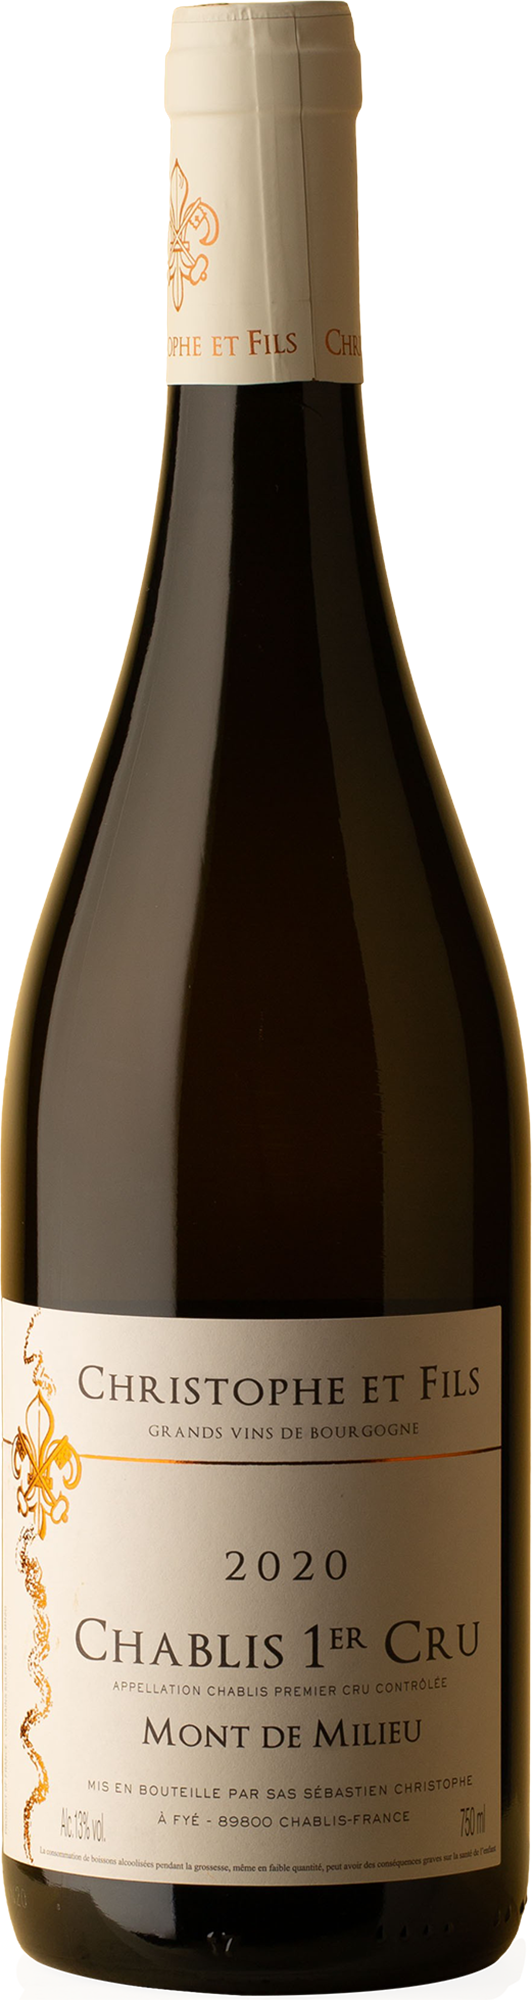 Christophe & Fils - Chablis 1er Cru Mont de Milieu Chardonnay 2020 White Wine